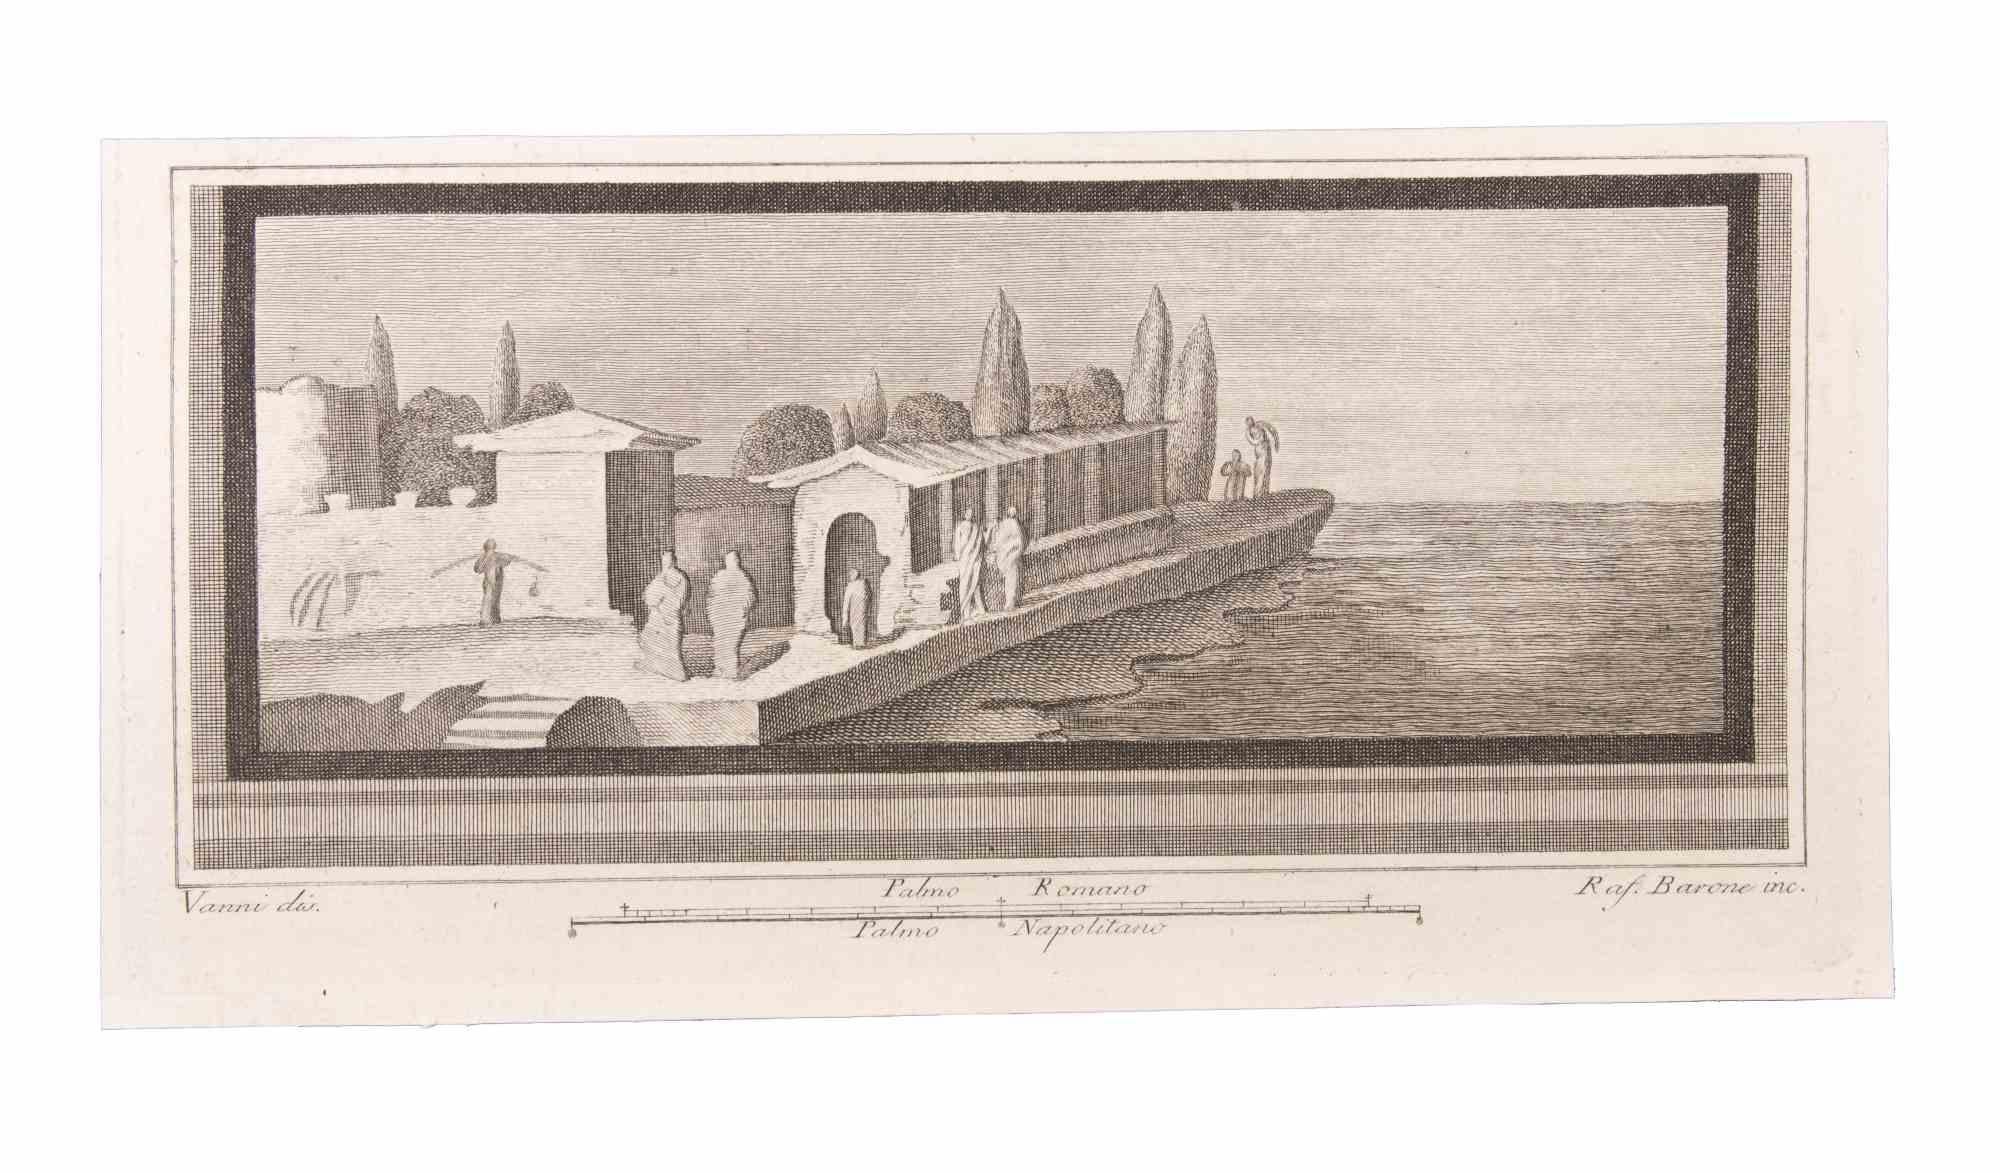 Paysage marin avec monuments  est une gravure réalisée par Raffaele Barone (18ème siècle).

La gravure appartient à la suite d'estampes "Antiquités d'Herculanum exposées" (titre original : "Le Antichità di Ercolano Esposte"), un volume de huit